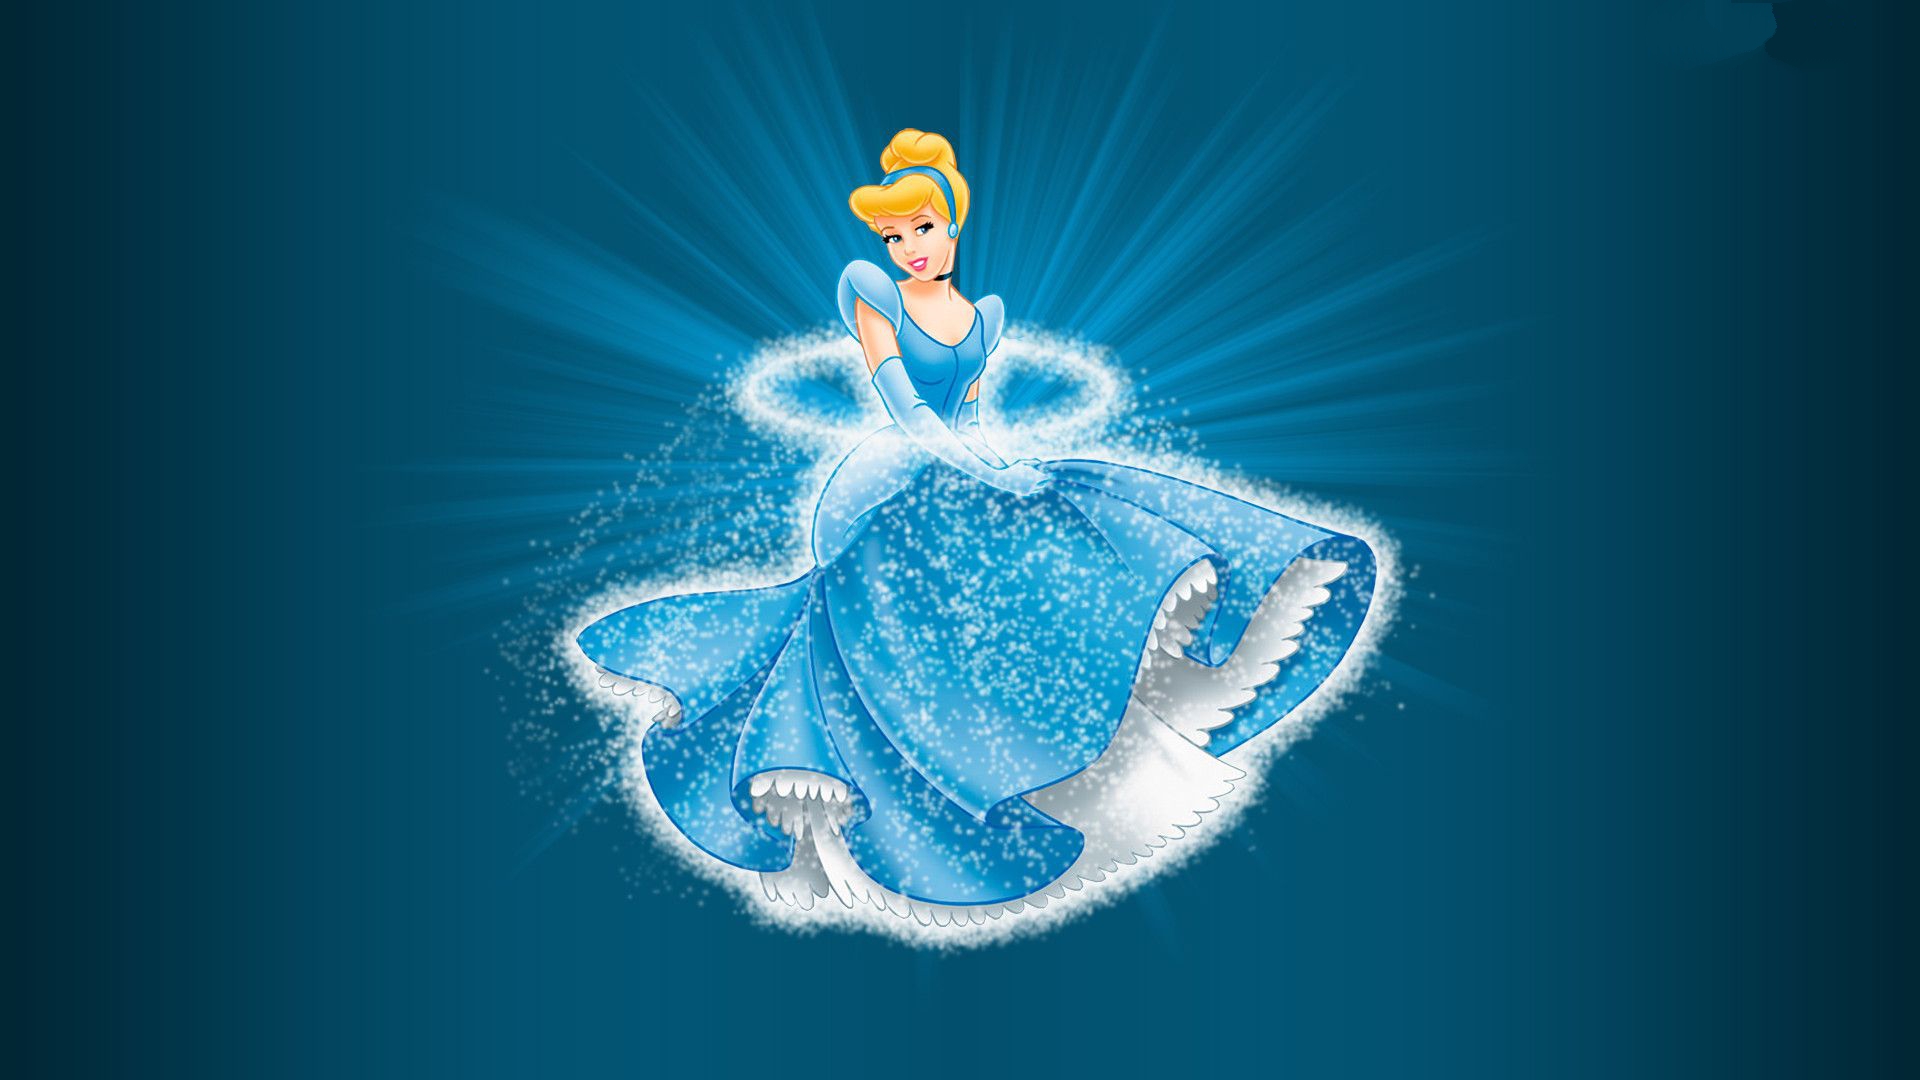 Disney Princess Cinderella Wallpaper Hd - HD Wallpaper 